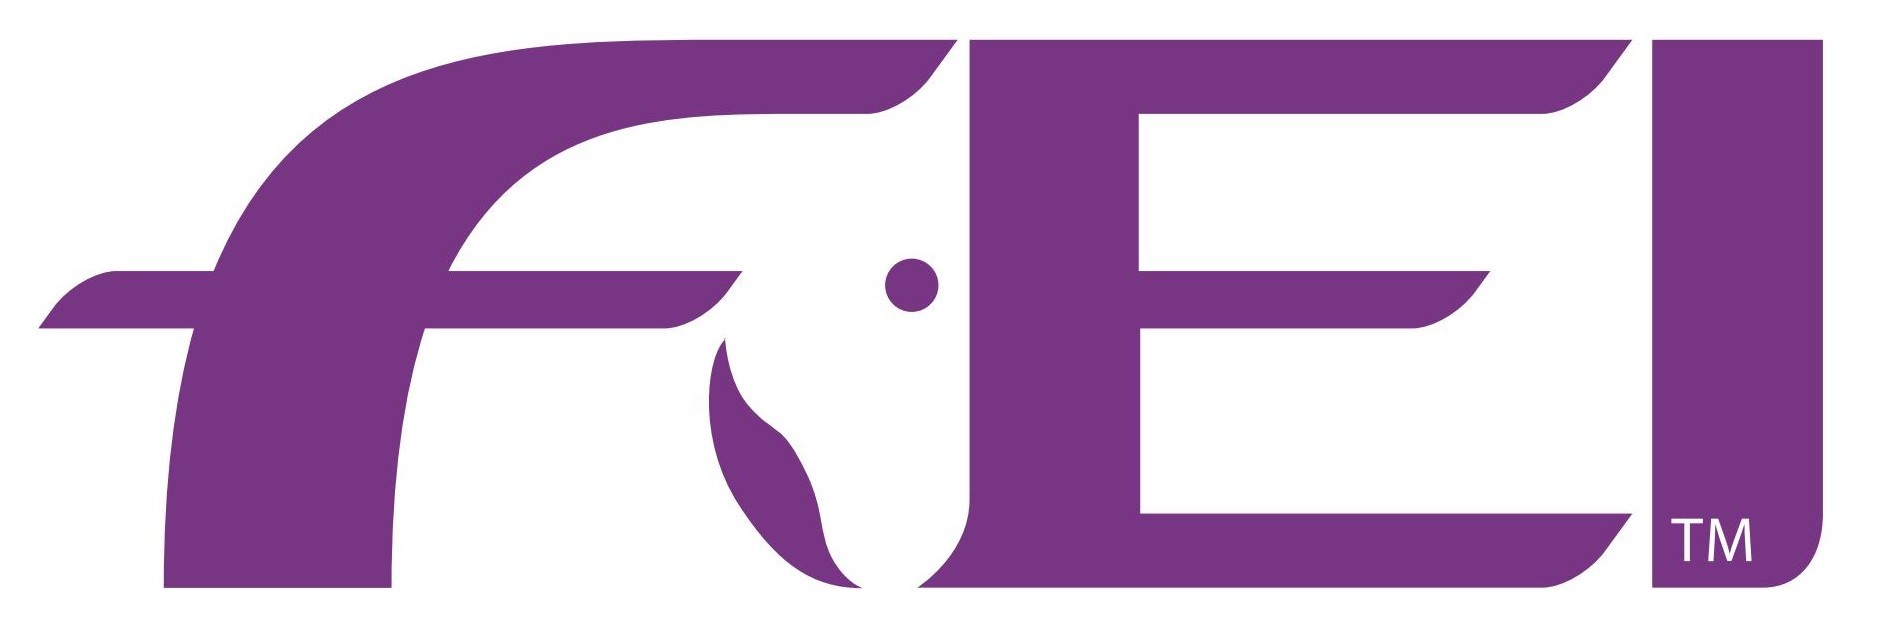 FEI International Federation for Equestrian Sports logo